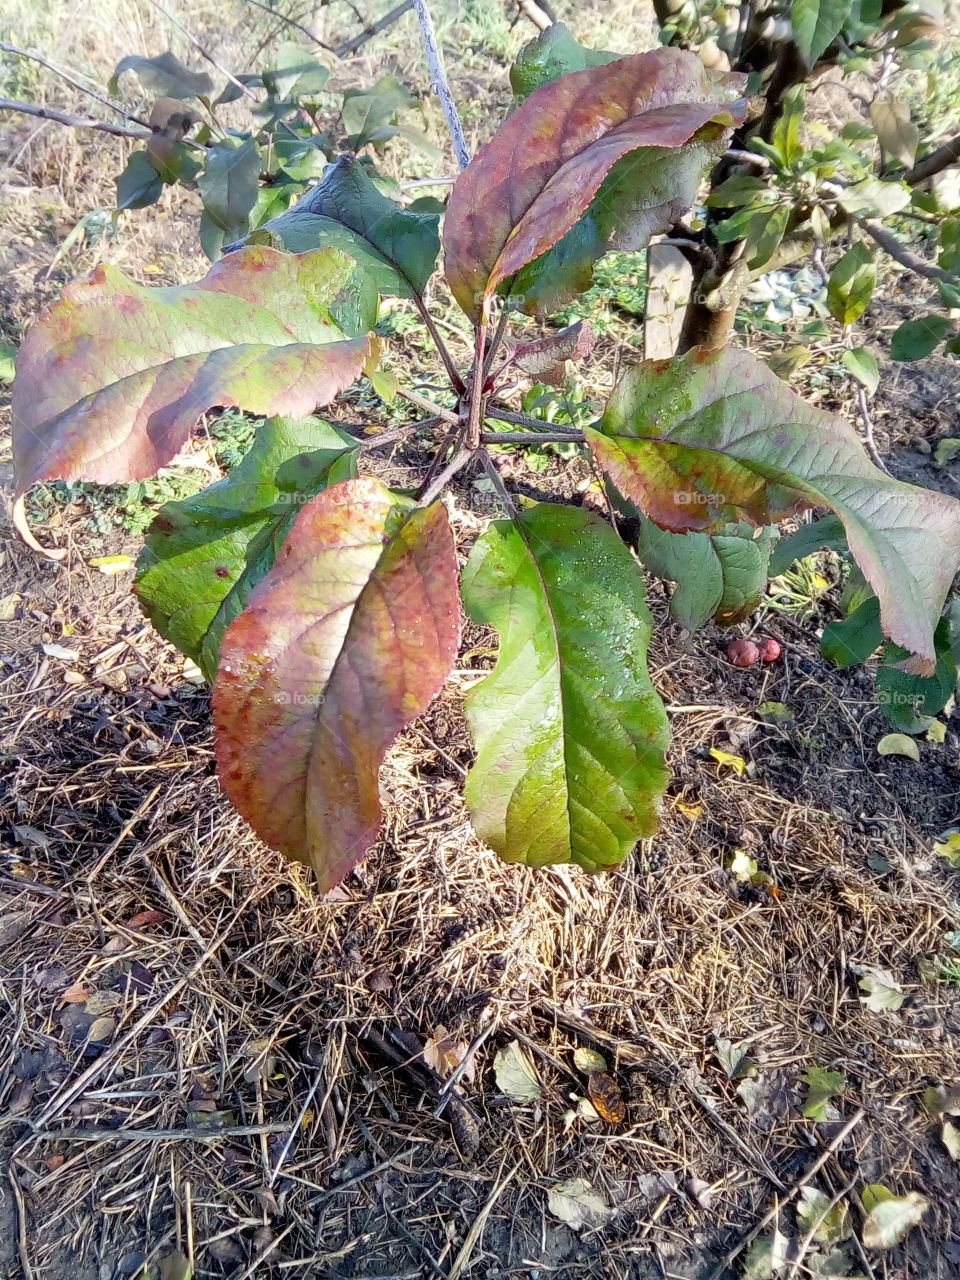 Apple leaves